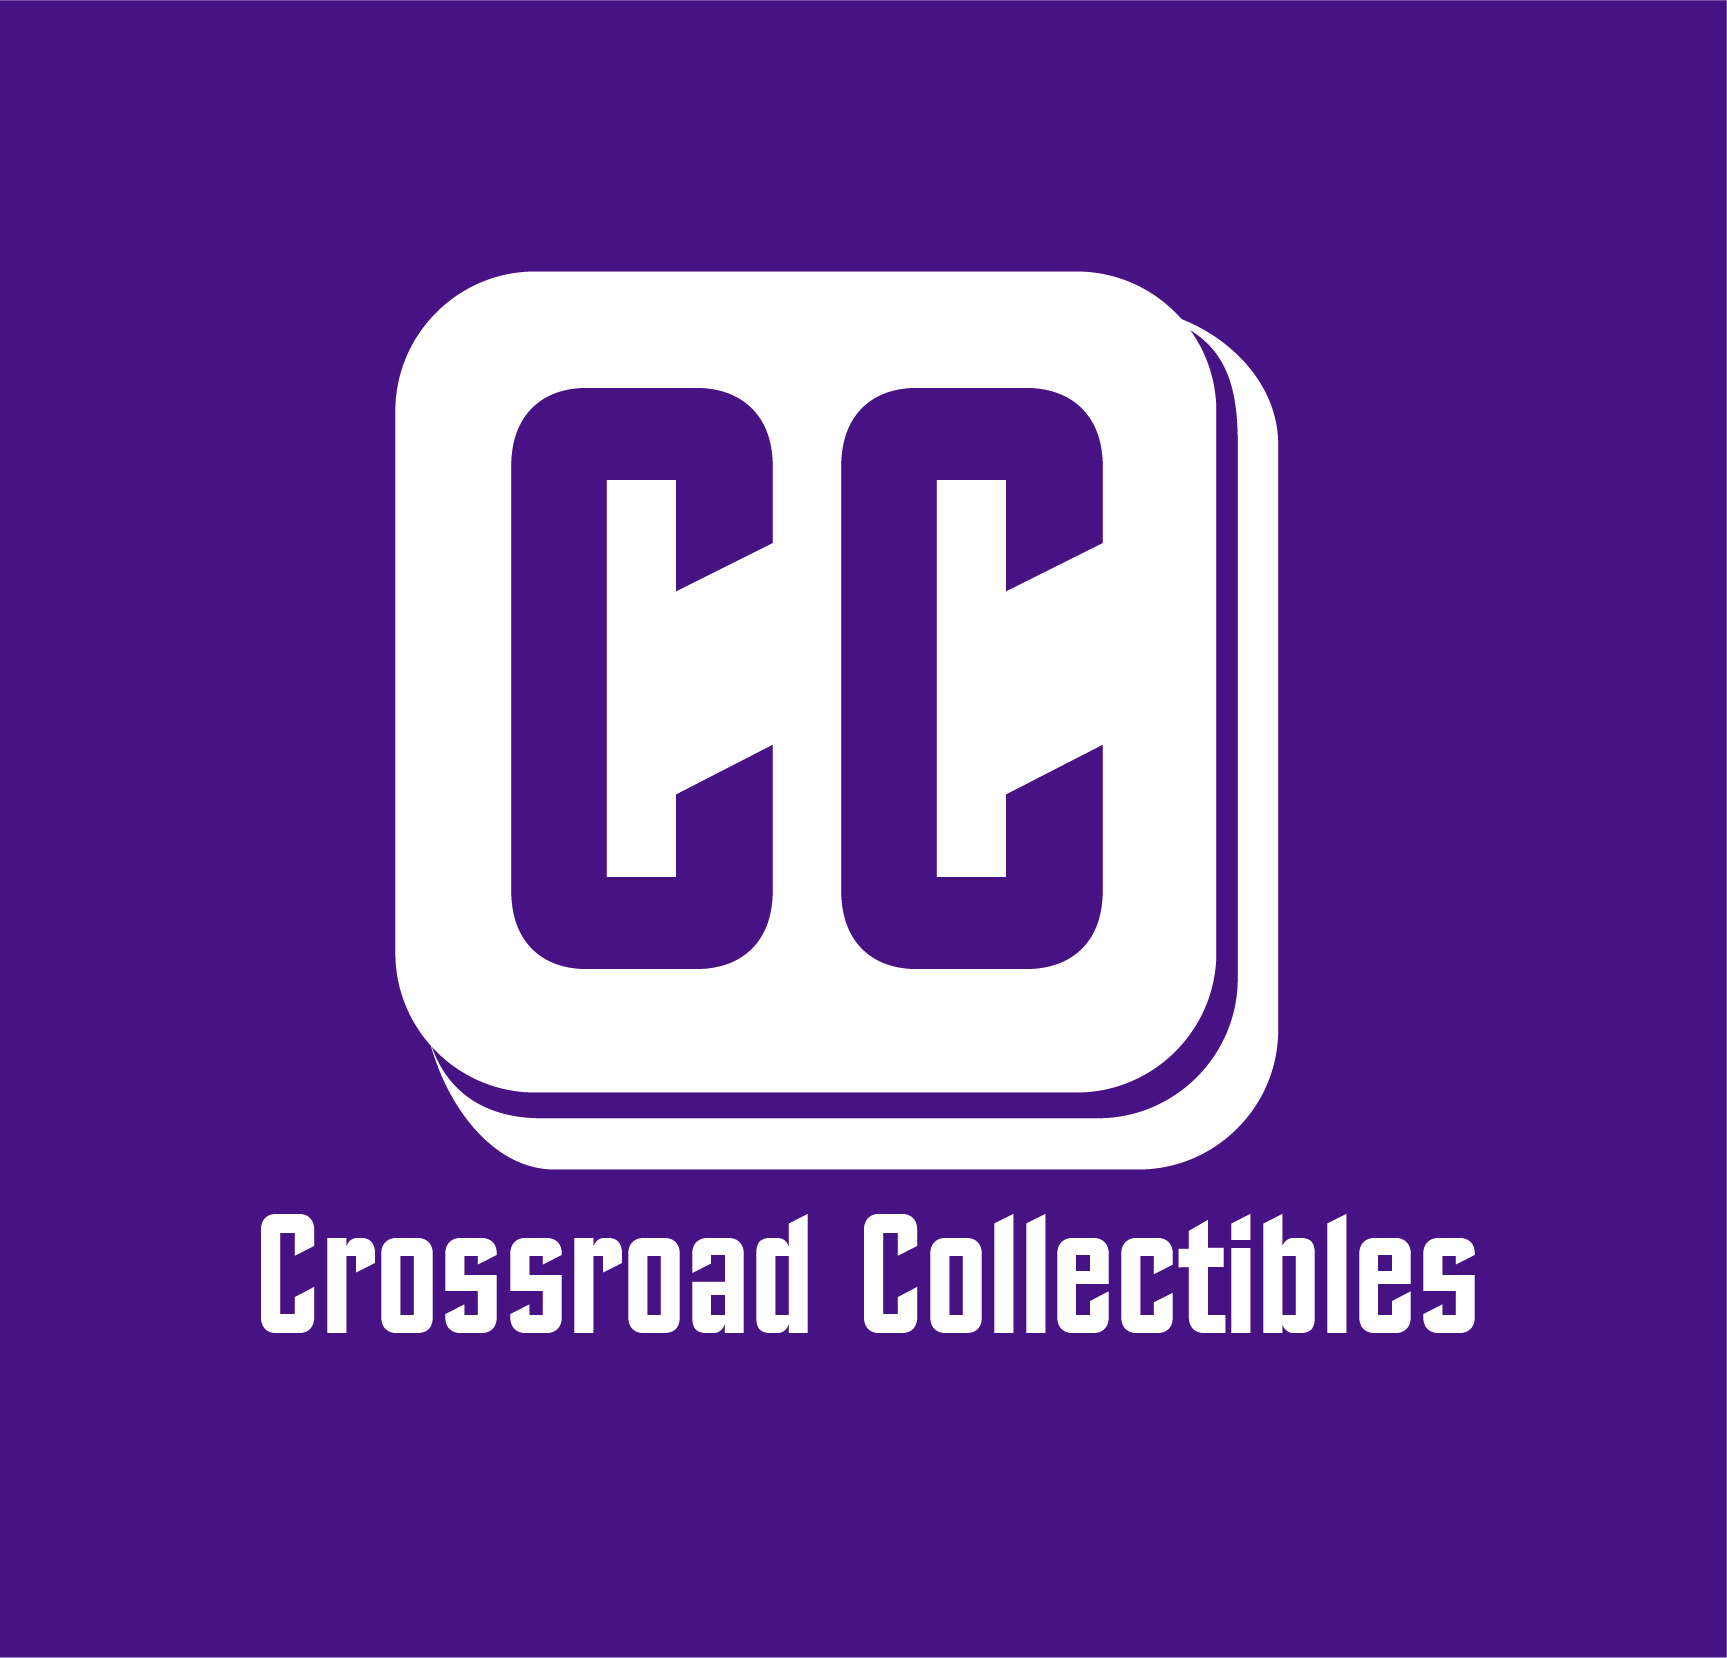 Crossroad Comics & Collectibles